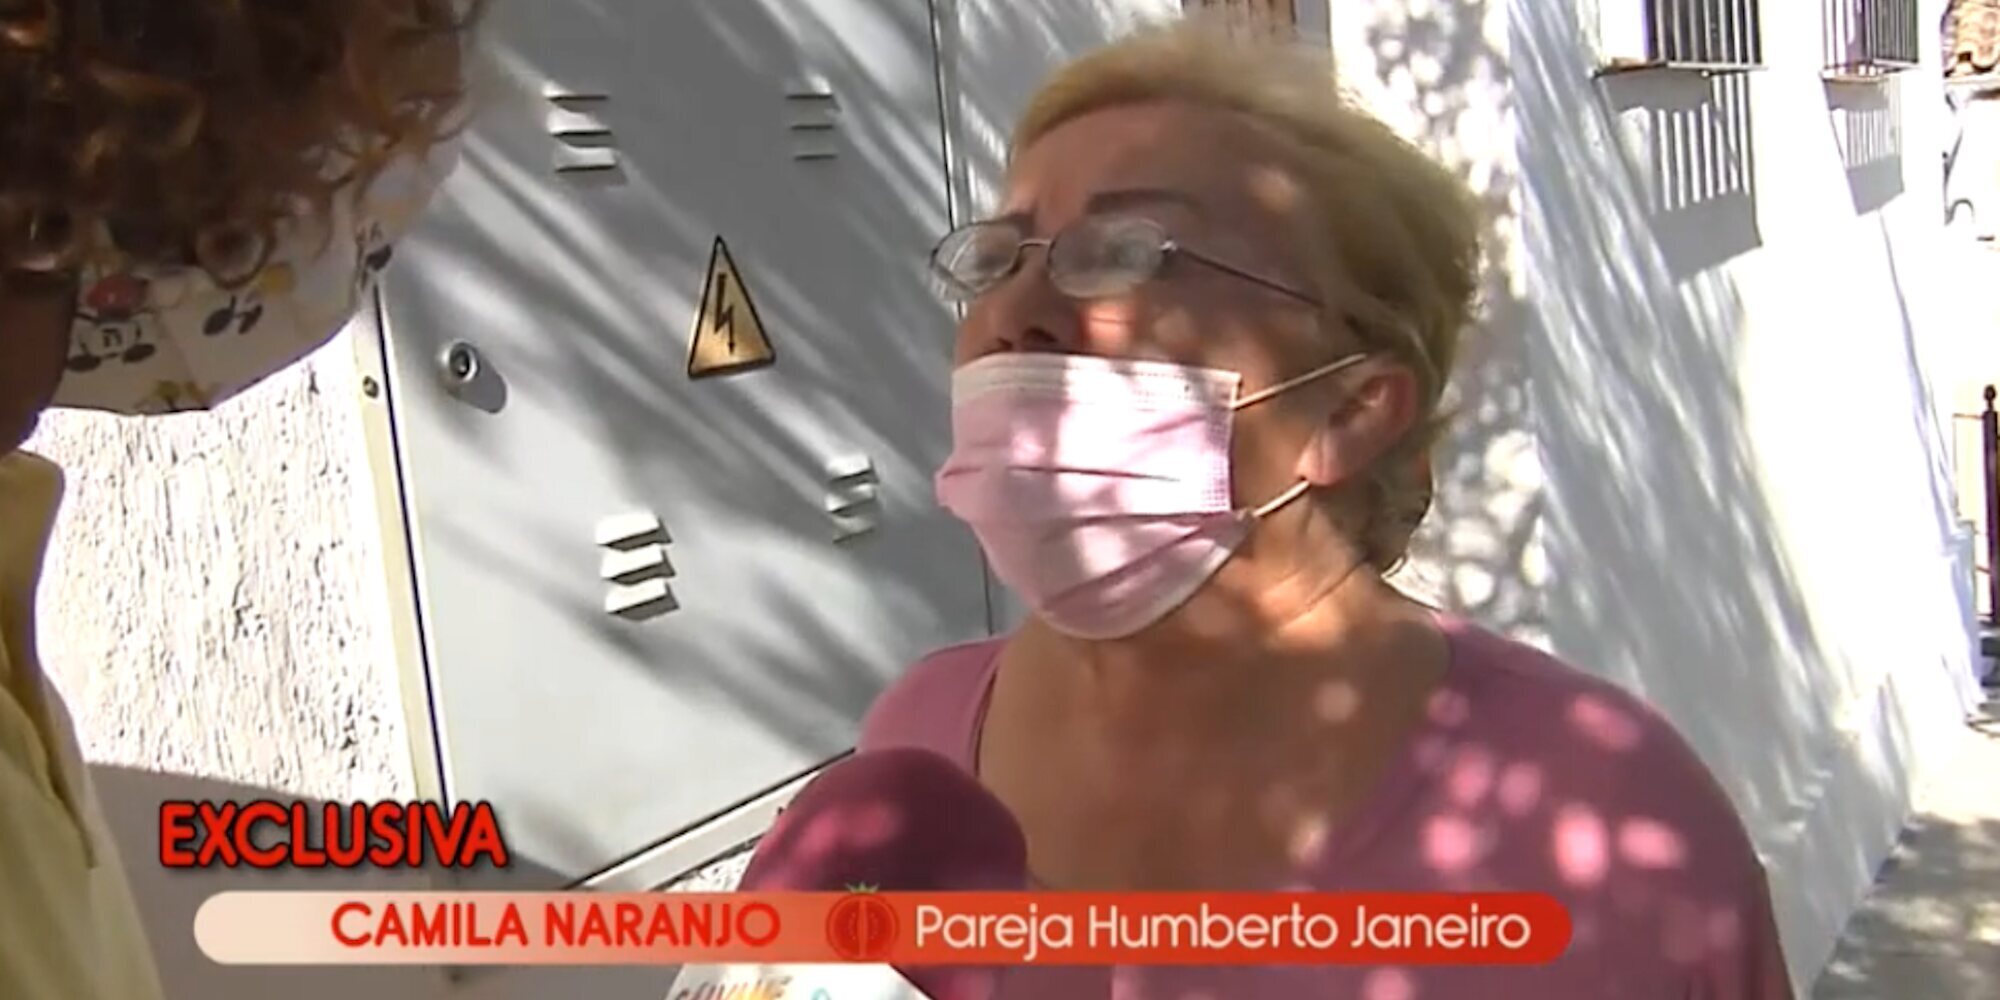 Camila Naranjo, pareja del fallecido Humberto Janeiro, muy dolida con sus hijos: "Alguno se ha portado mal"